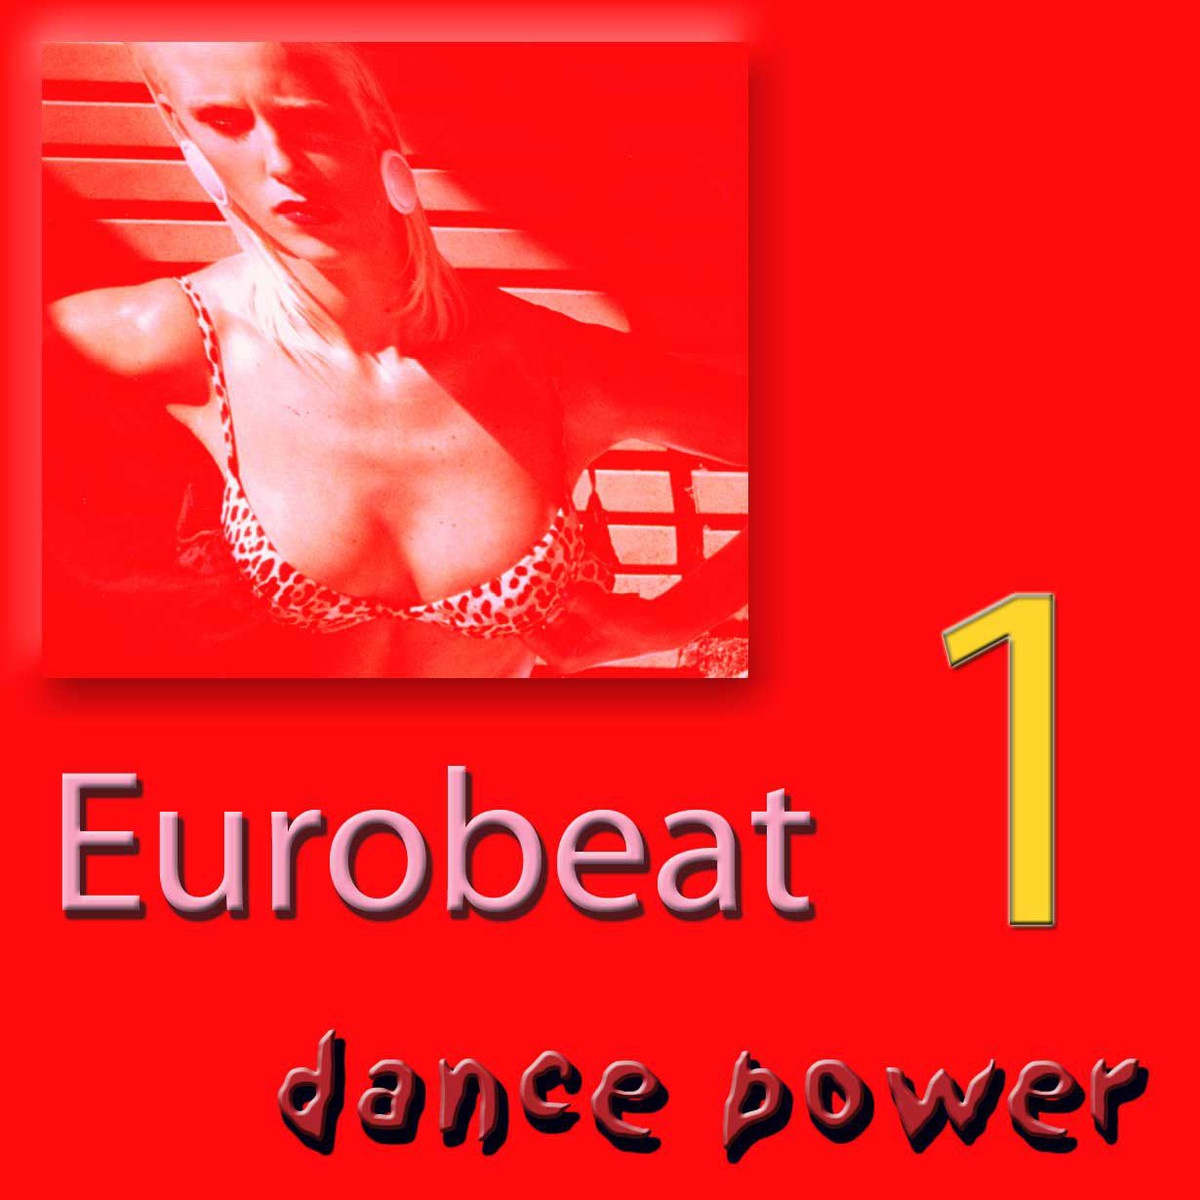 Eurobeat Dance Power - Worldwide, Vol. 1 (Extended)